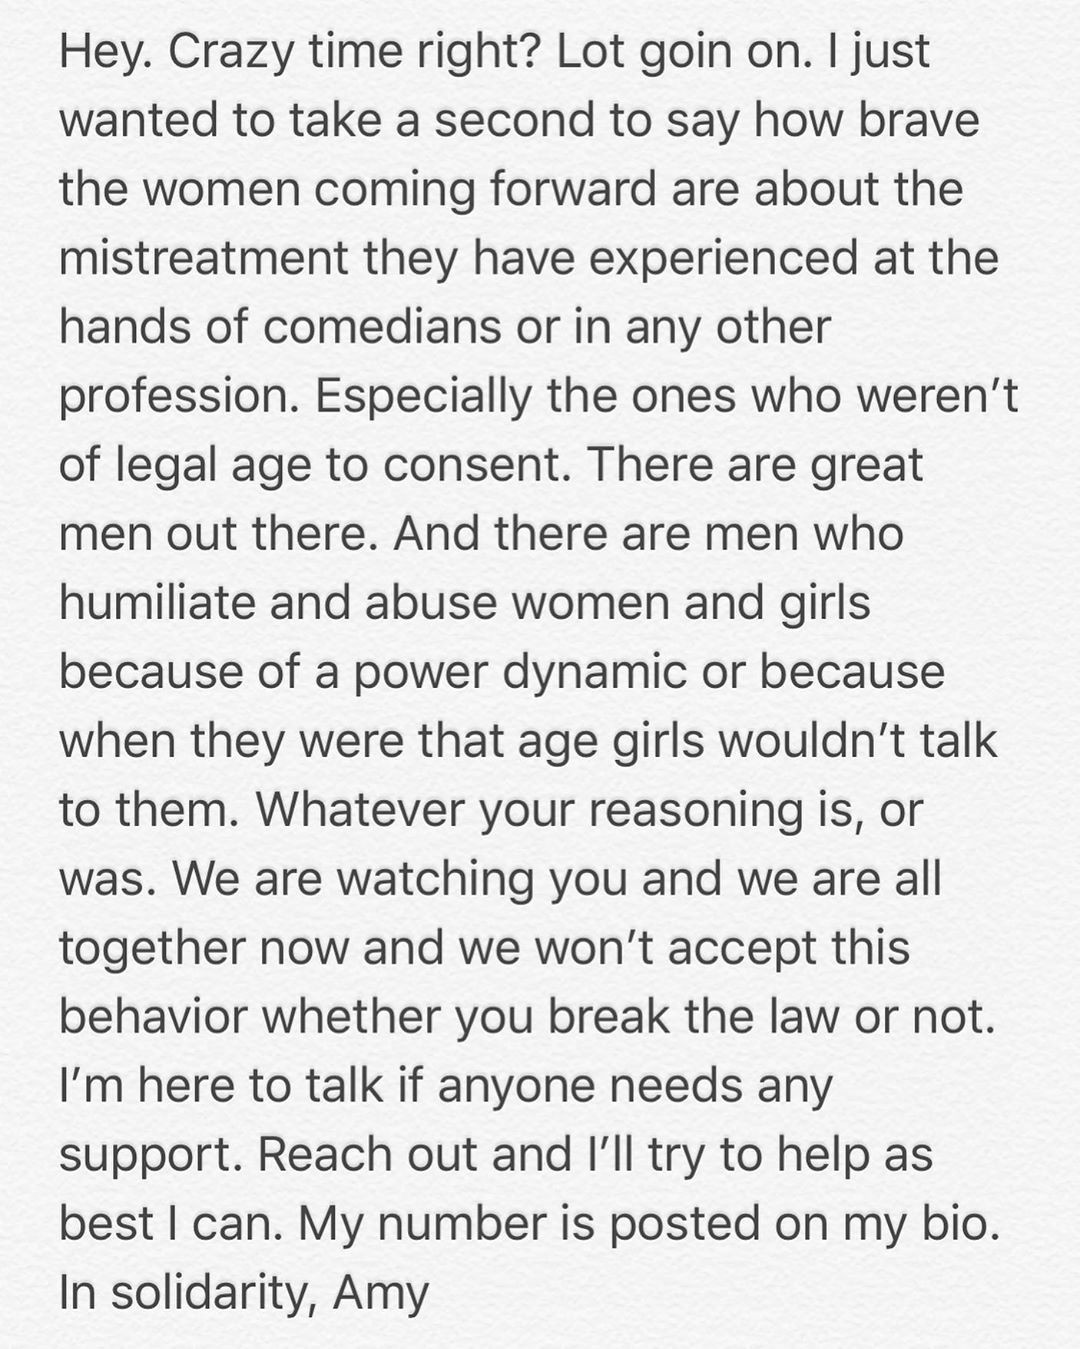 Amy Schumer oferece apoio a vítimas de abuso (Foto: Reprodução / Instagram)